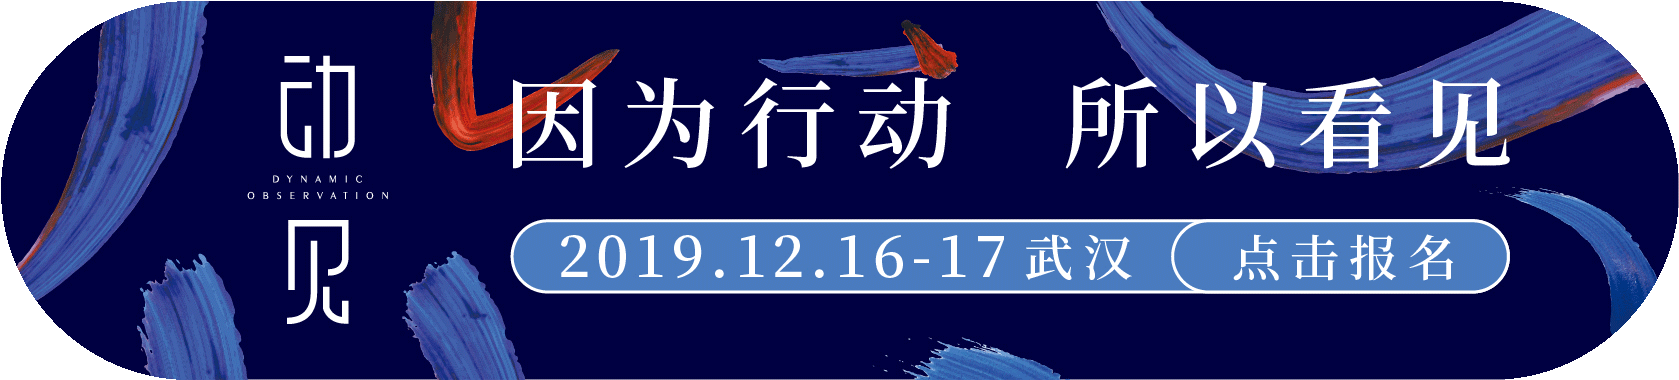 2019品观APP年会banner.gif